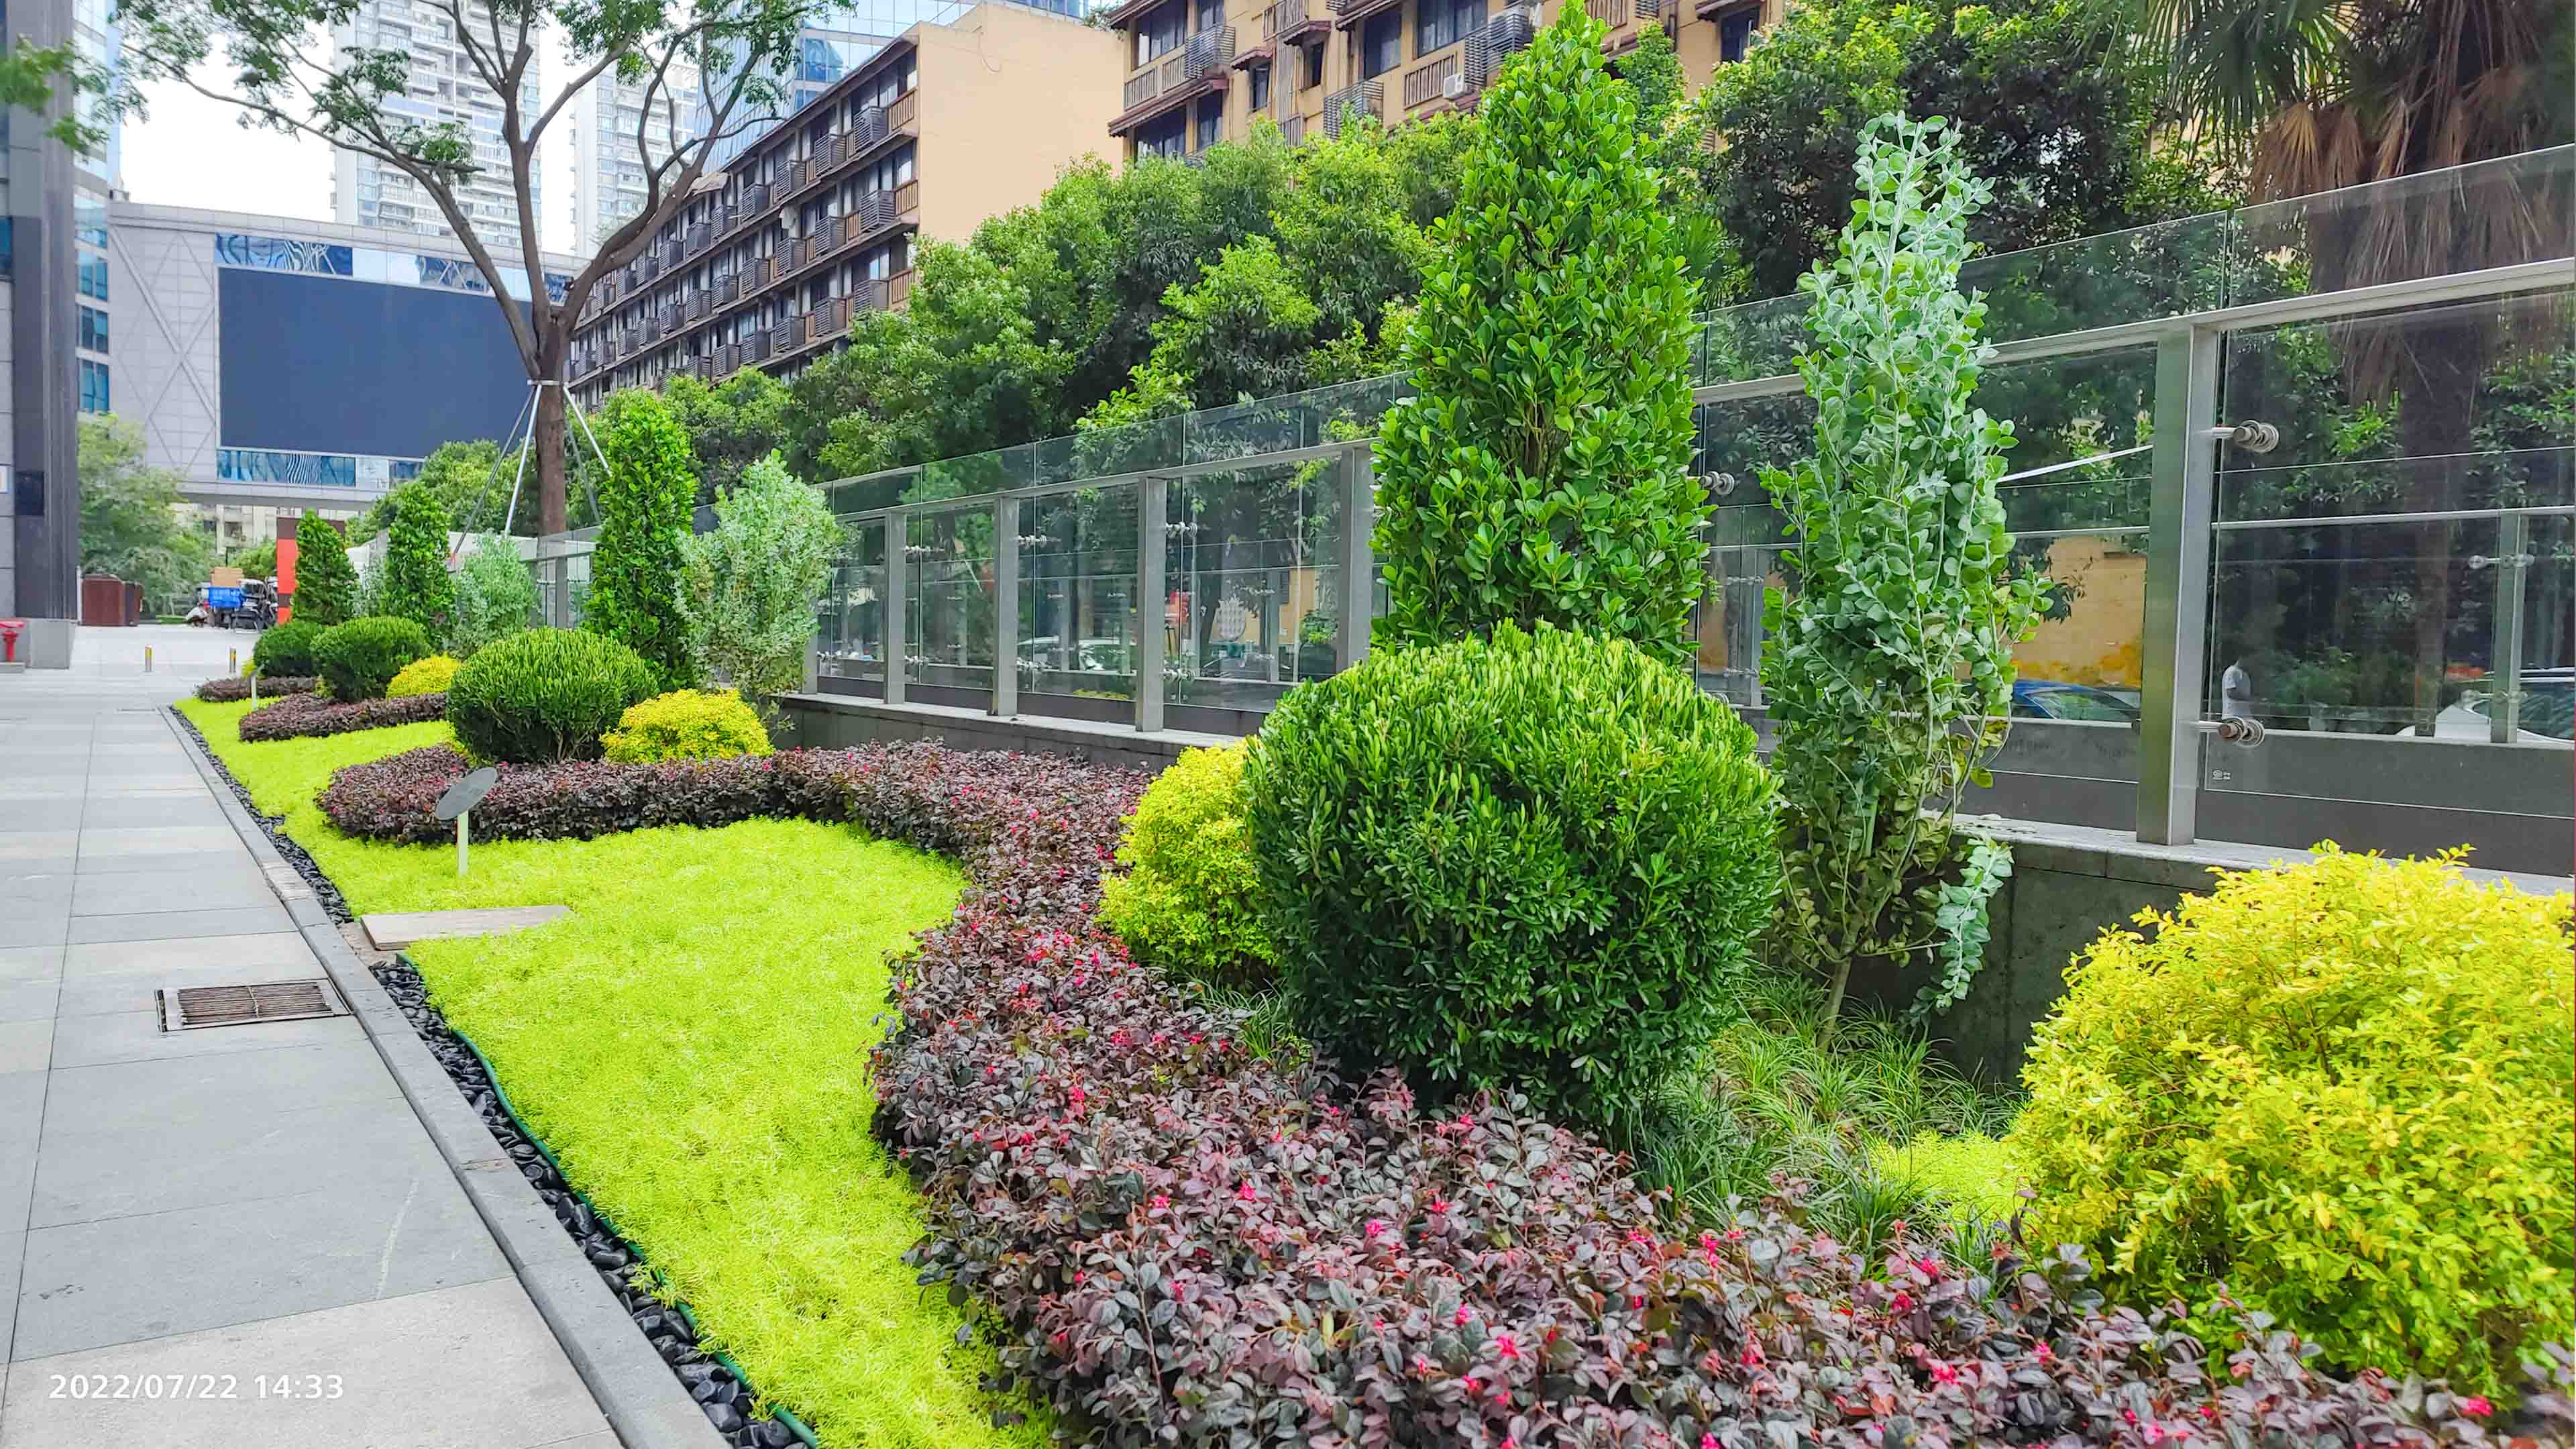 綿陽室外綠化設計丨喜年廣場綠化帶改造